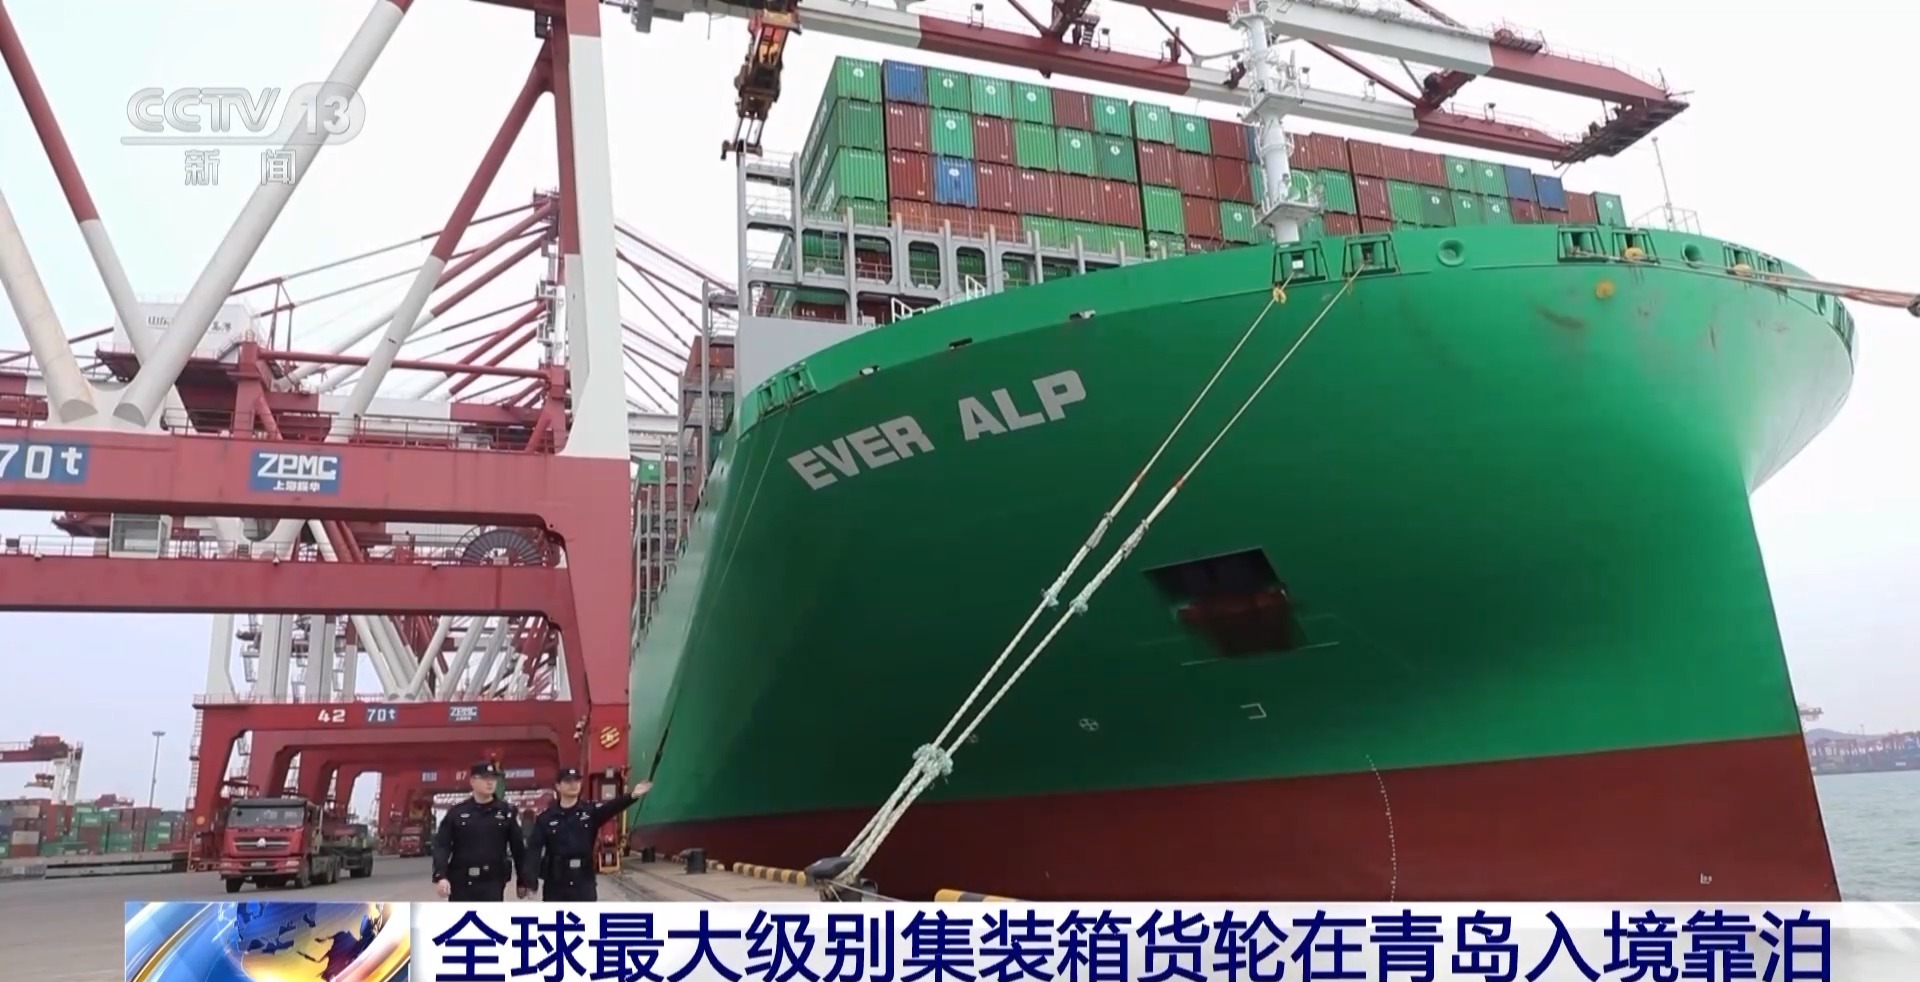 全球最大级别集装箱货轮在青岛入境靠泊